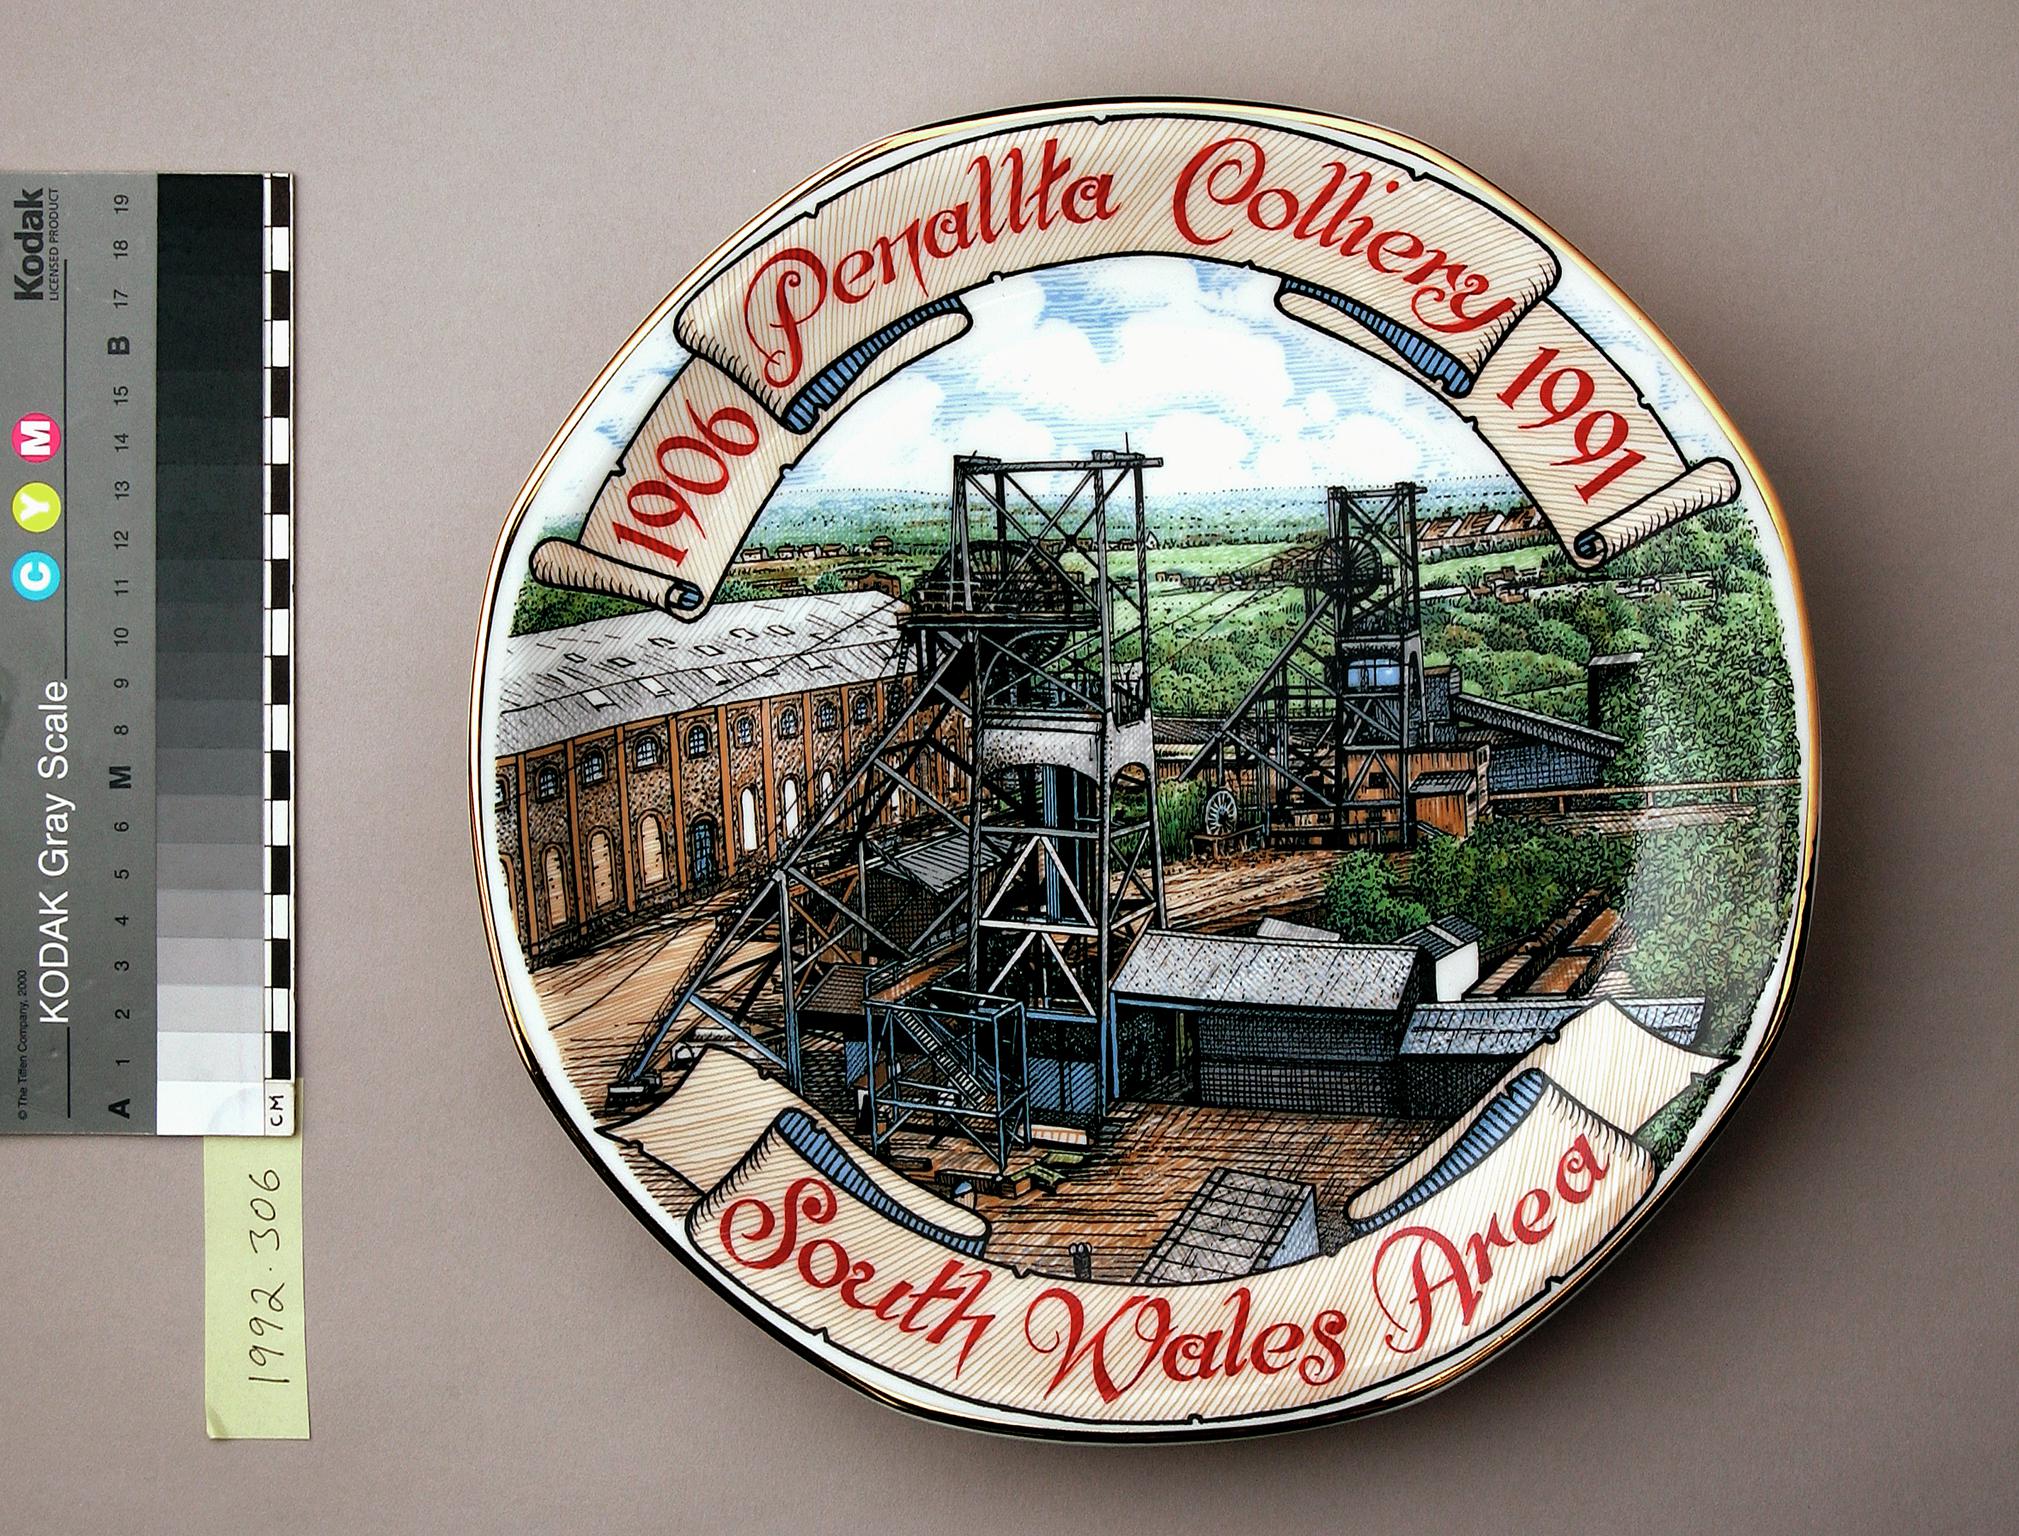 Penallta Colliery commemorative plate